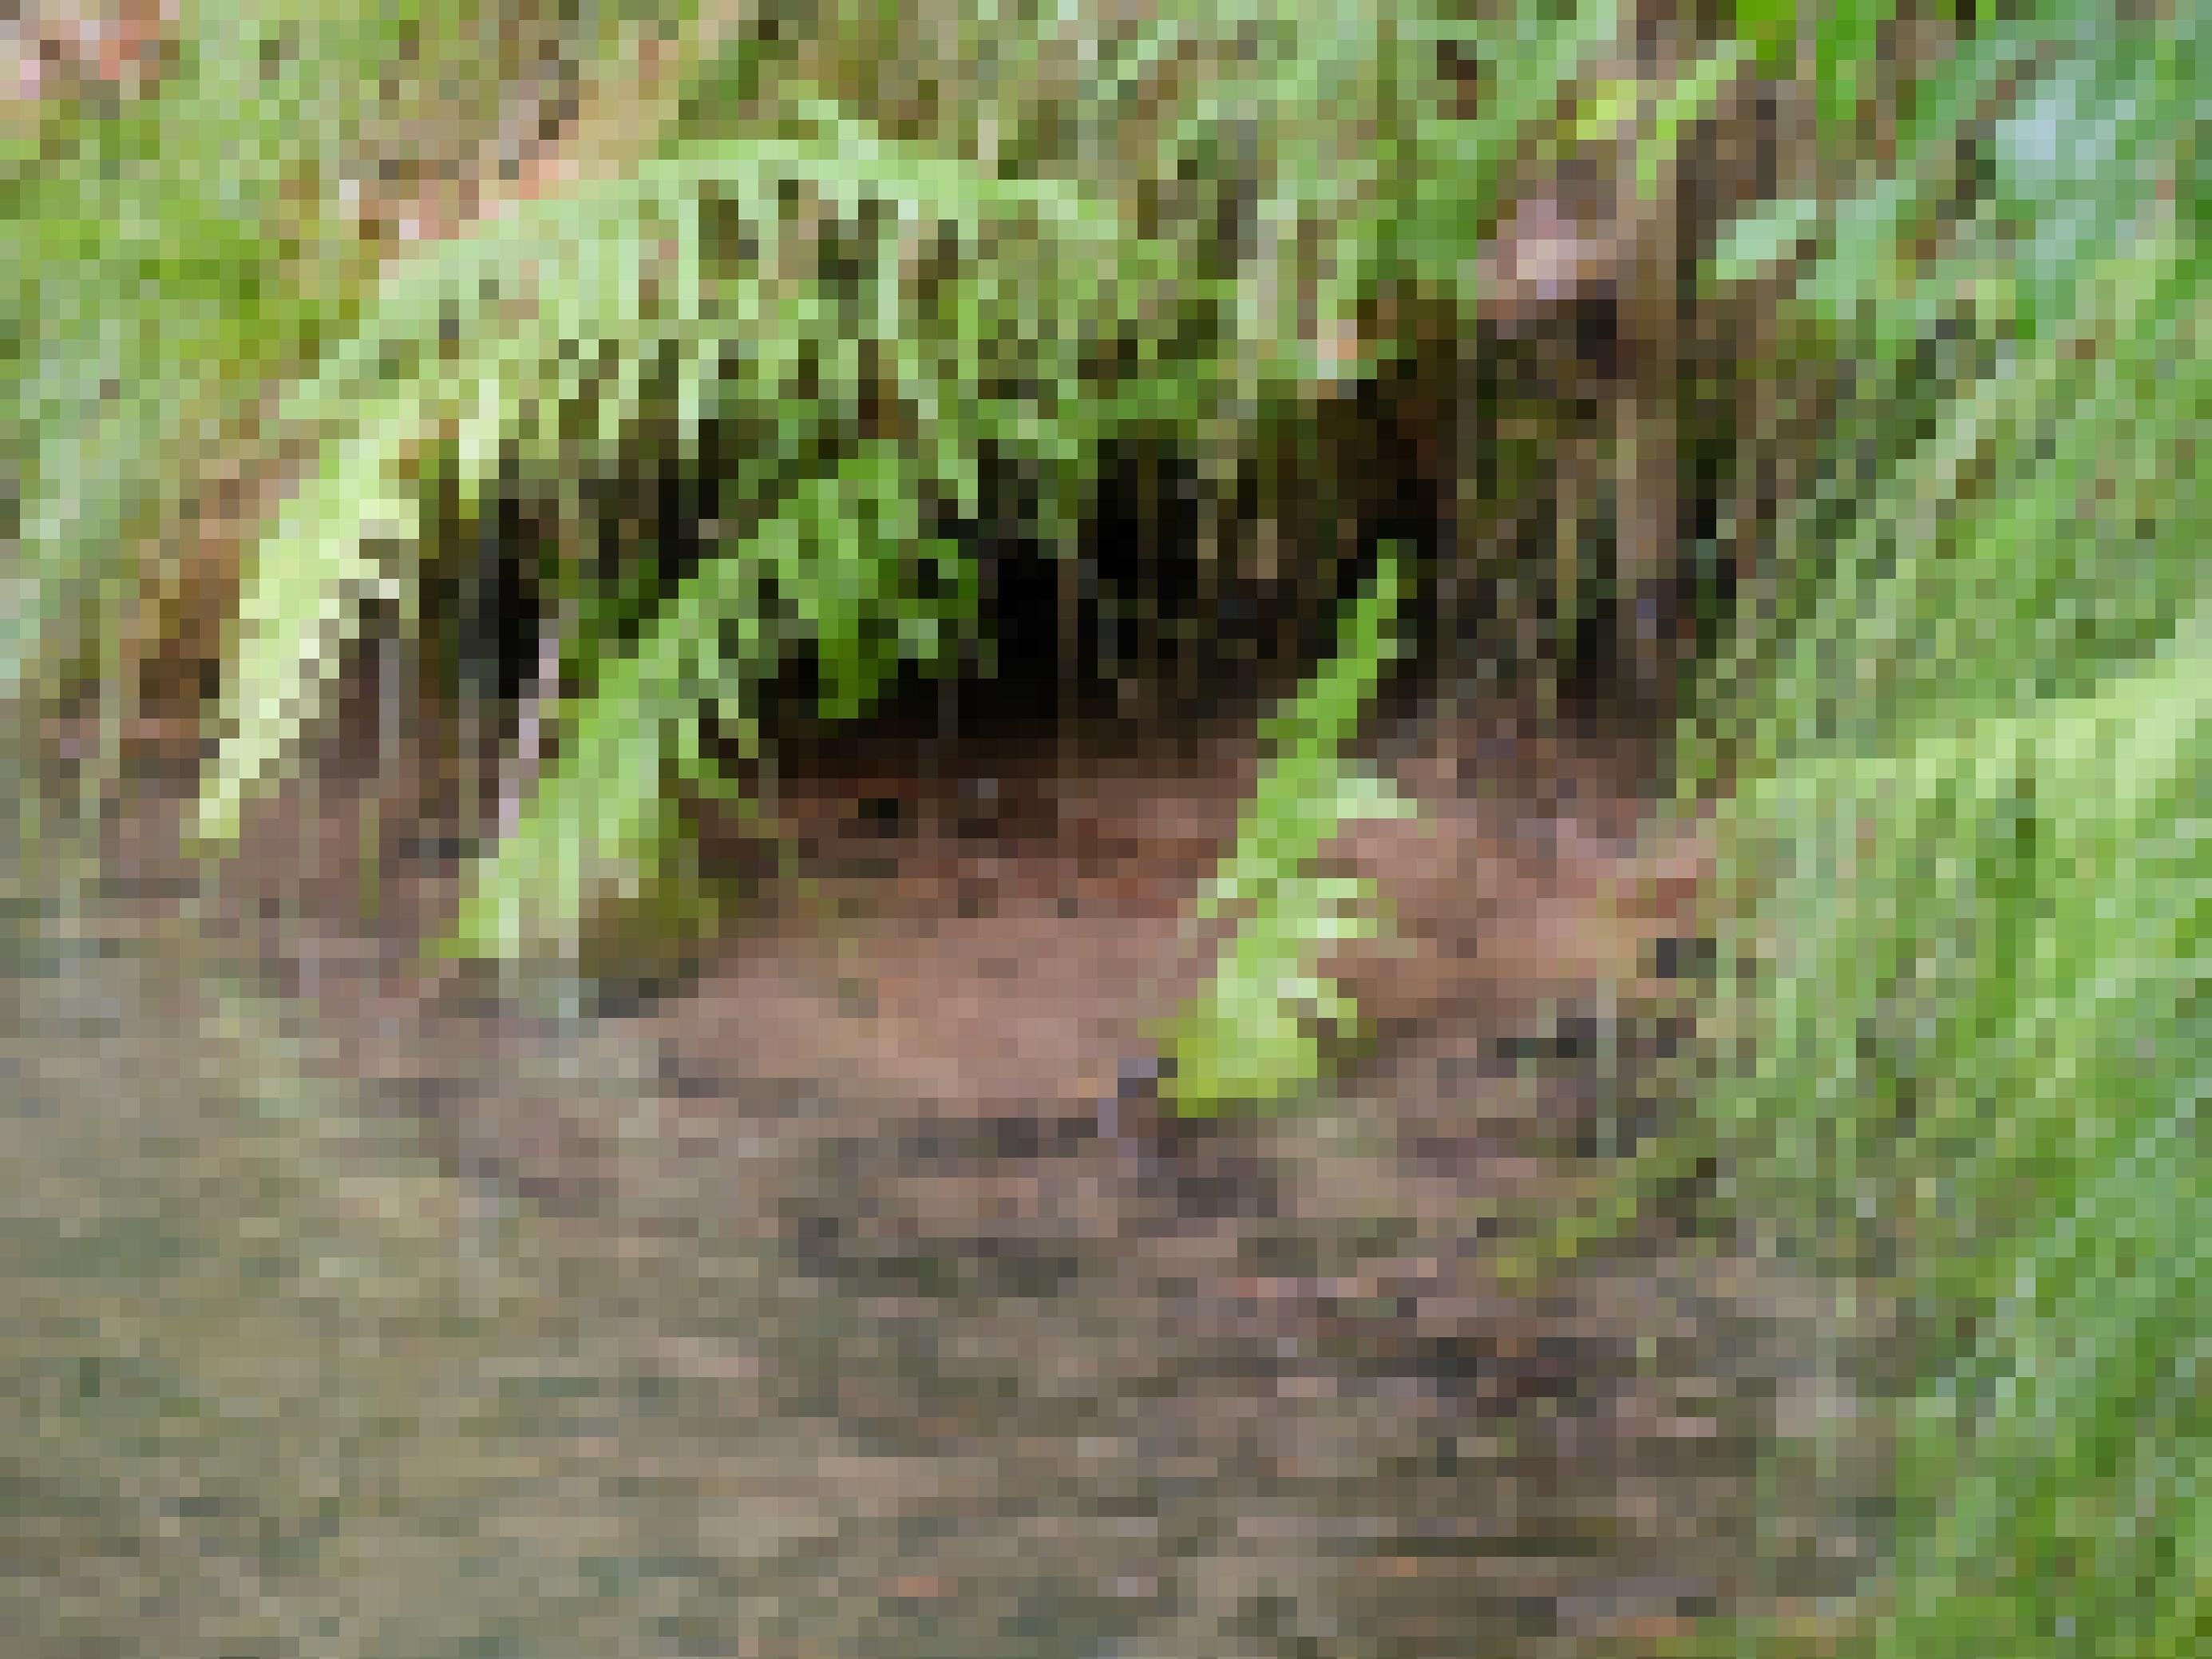 Wasser quillt in einen Teich mit rotem Sandboden, am Ufer grüne Gras- und Farnpfllanzen